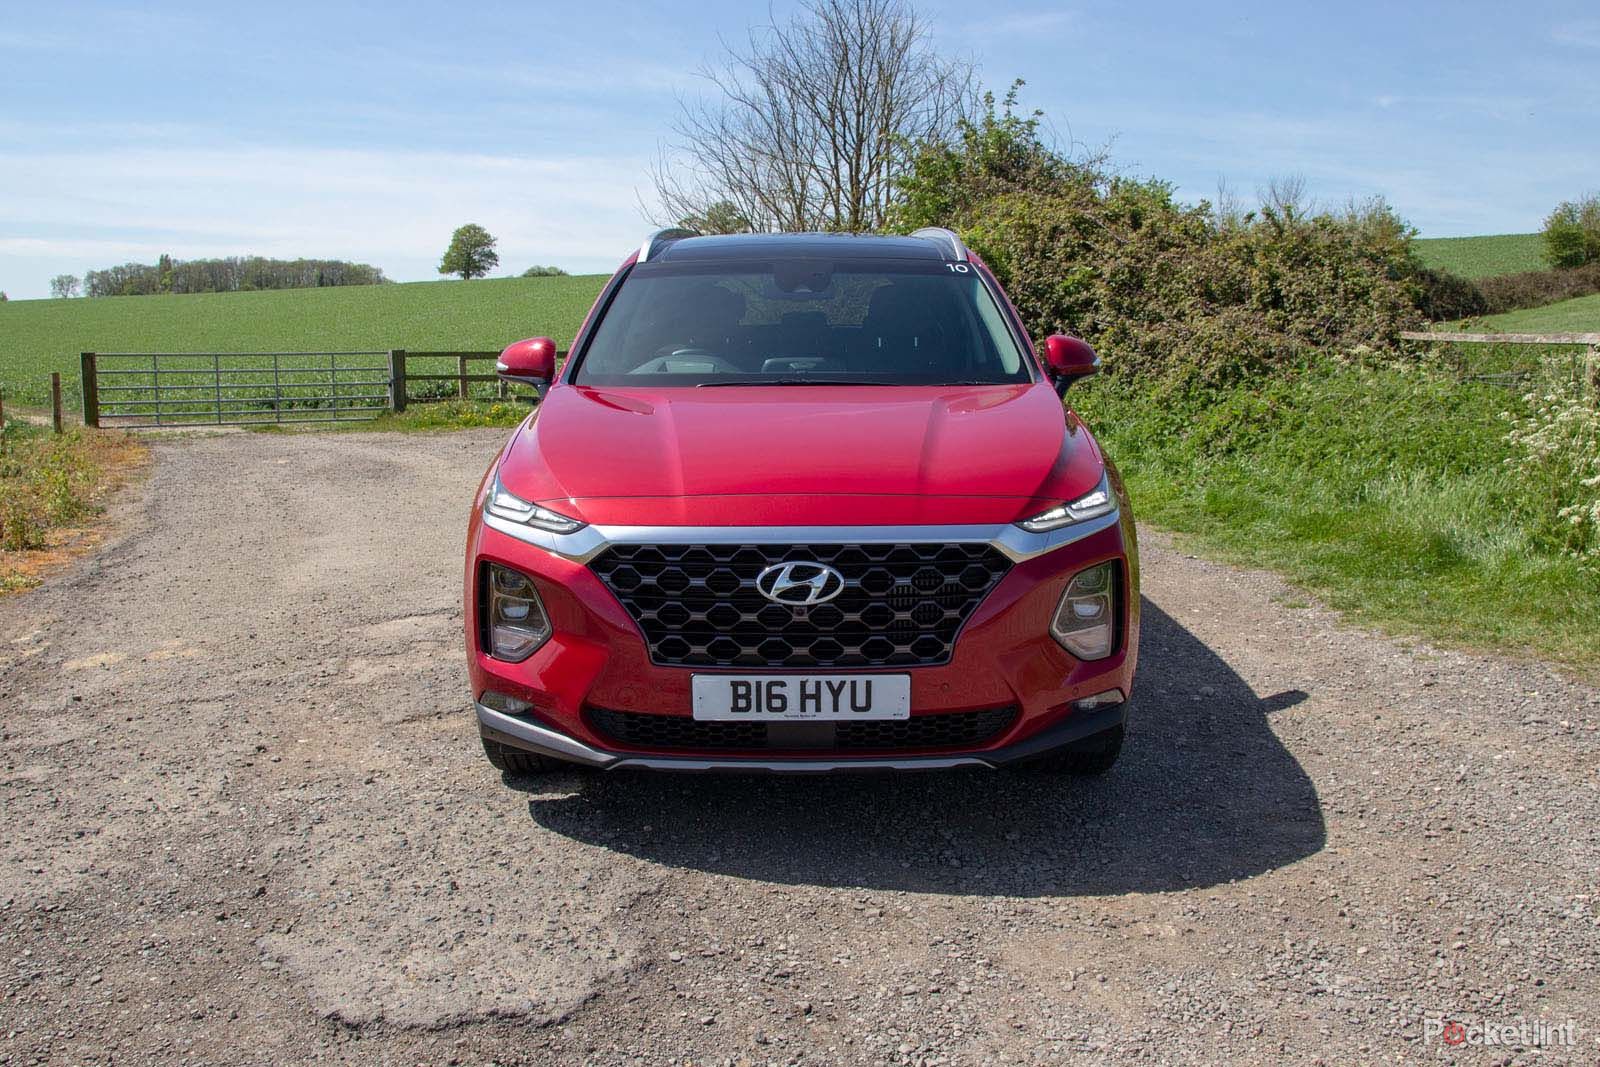 Hyundai Santa Fe review image 1